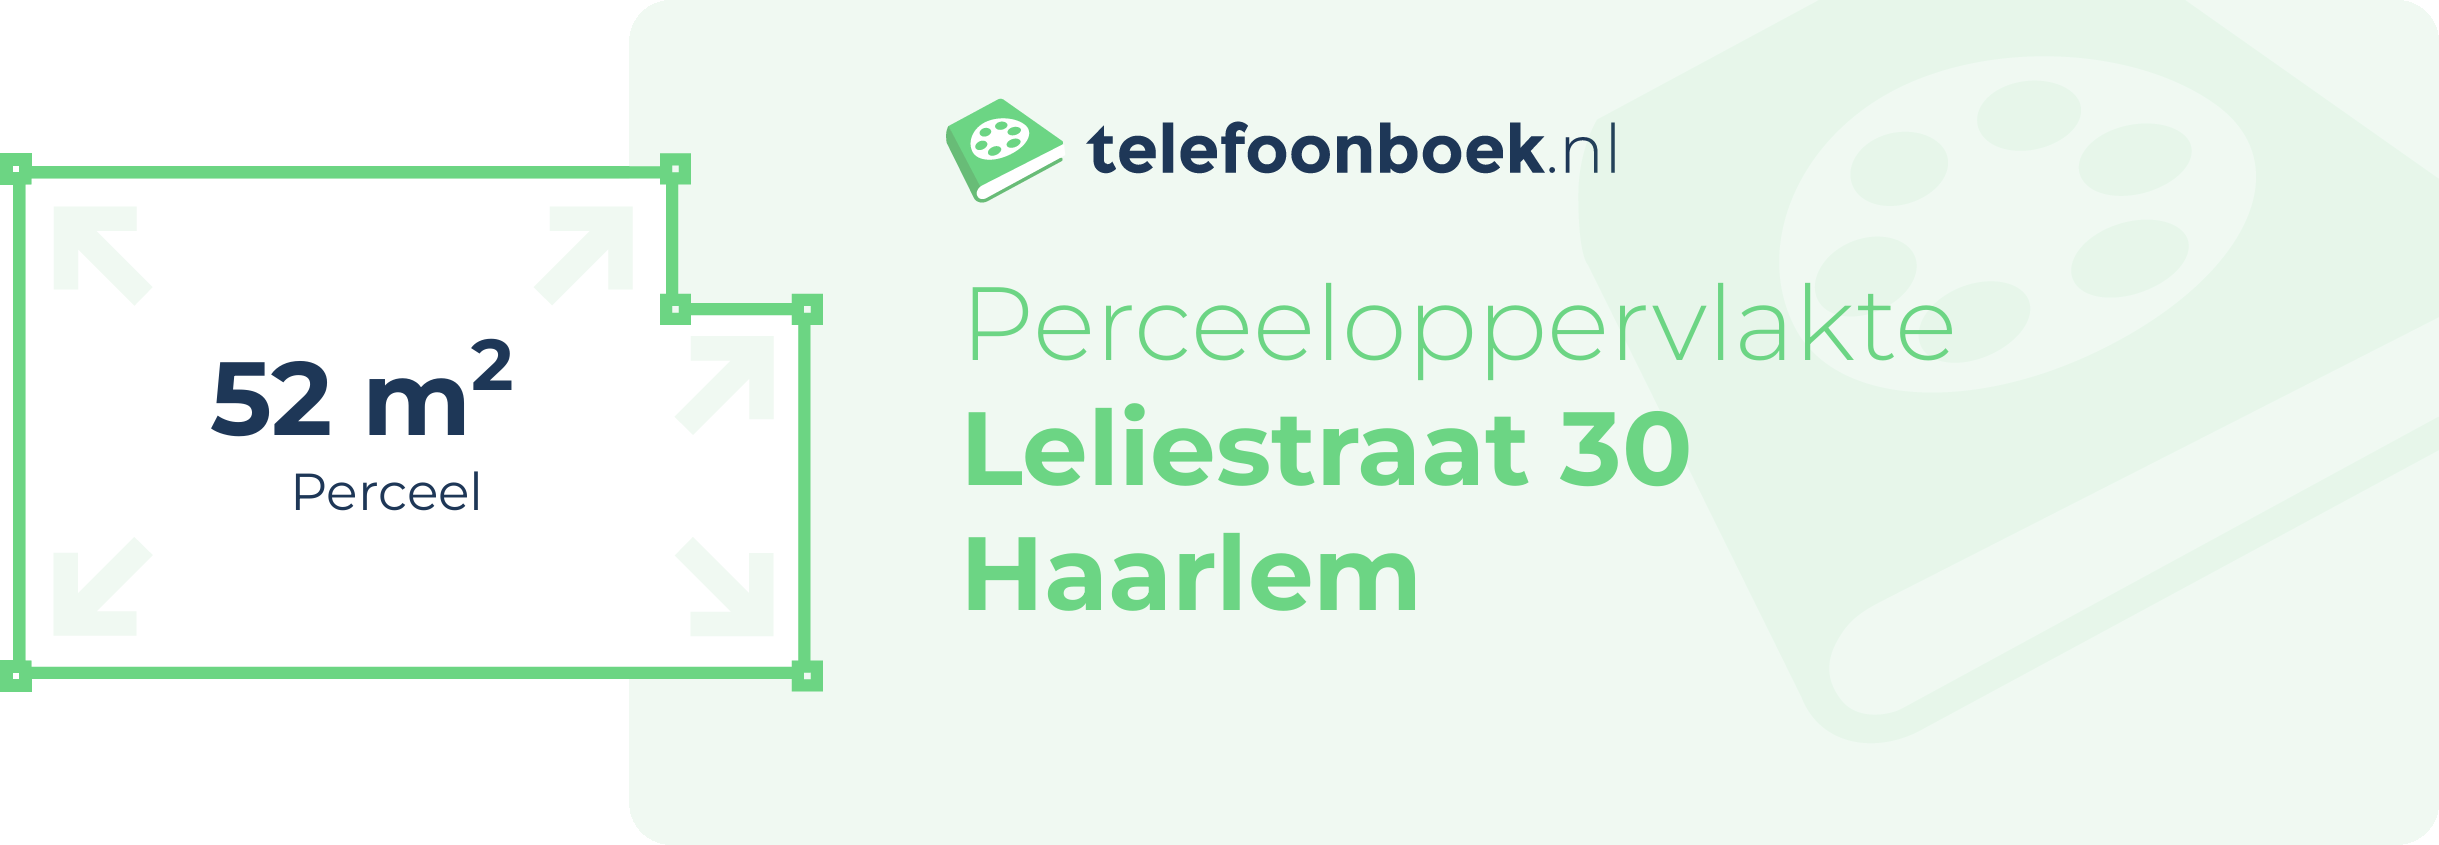 Perceeloppervlakte Leliestraat 30 Haarlem